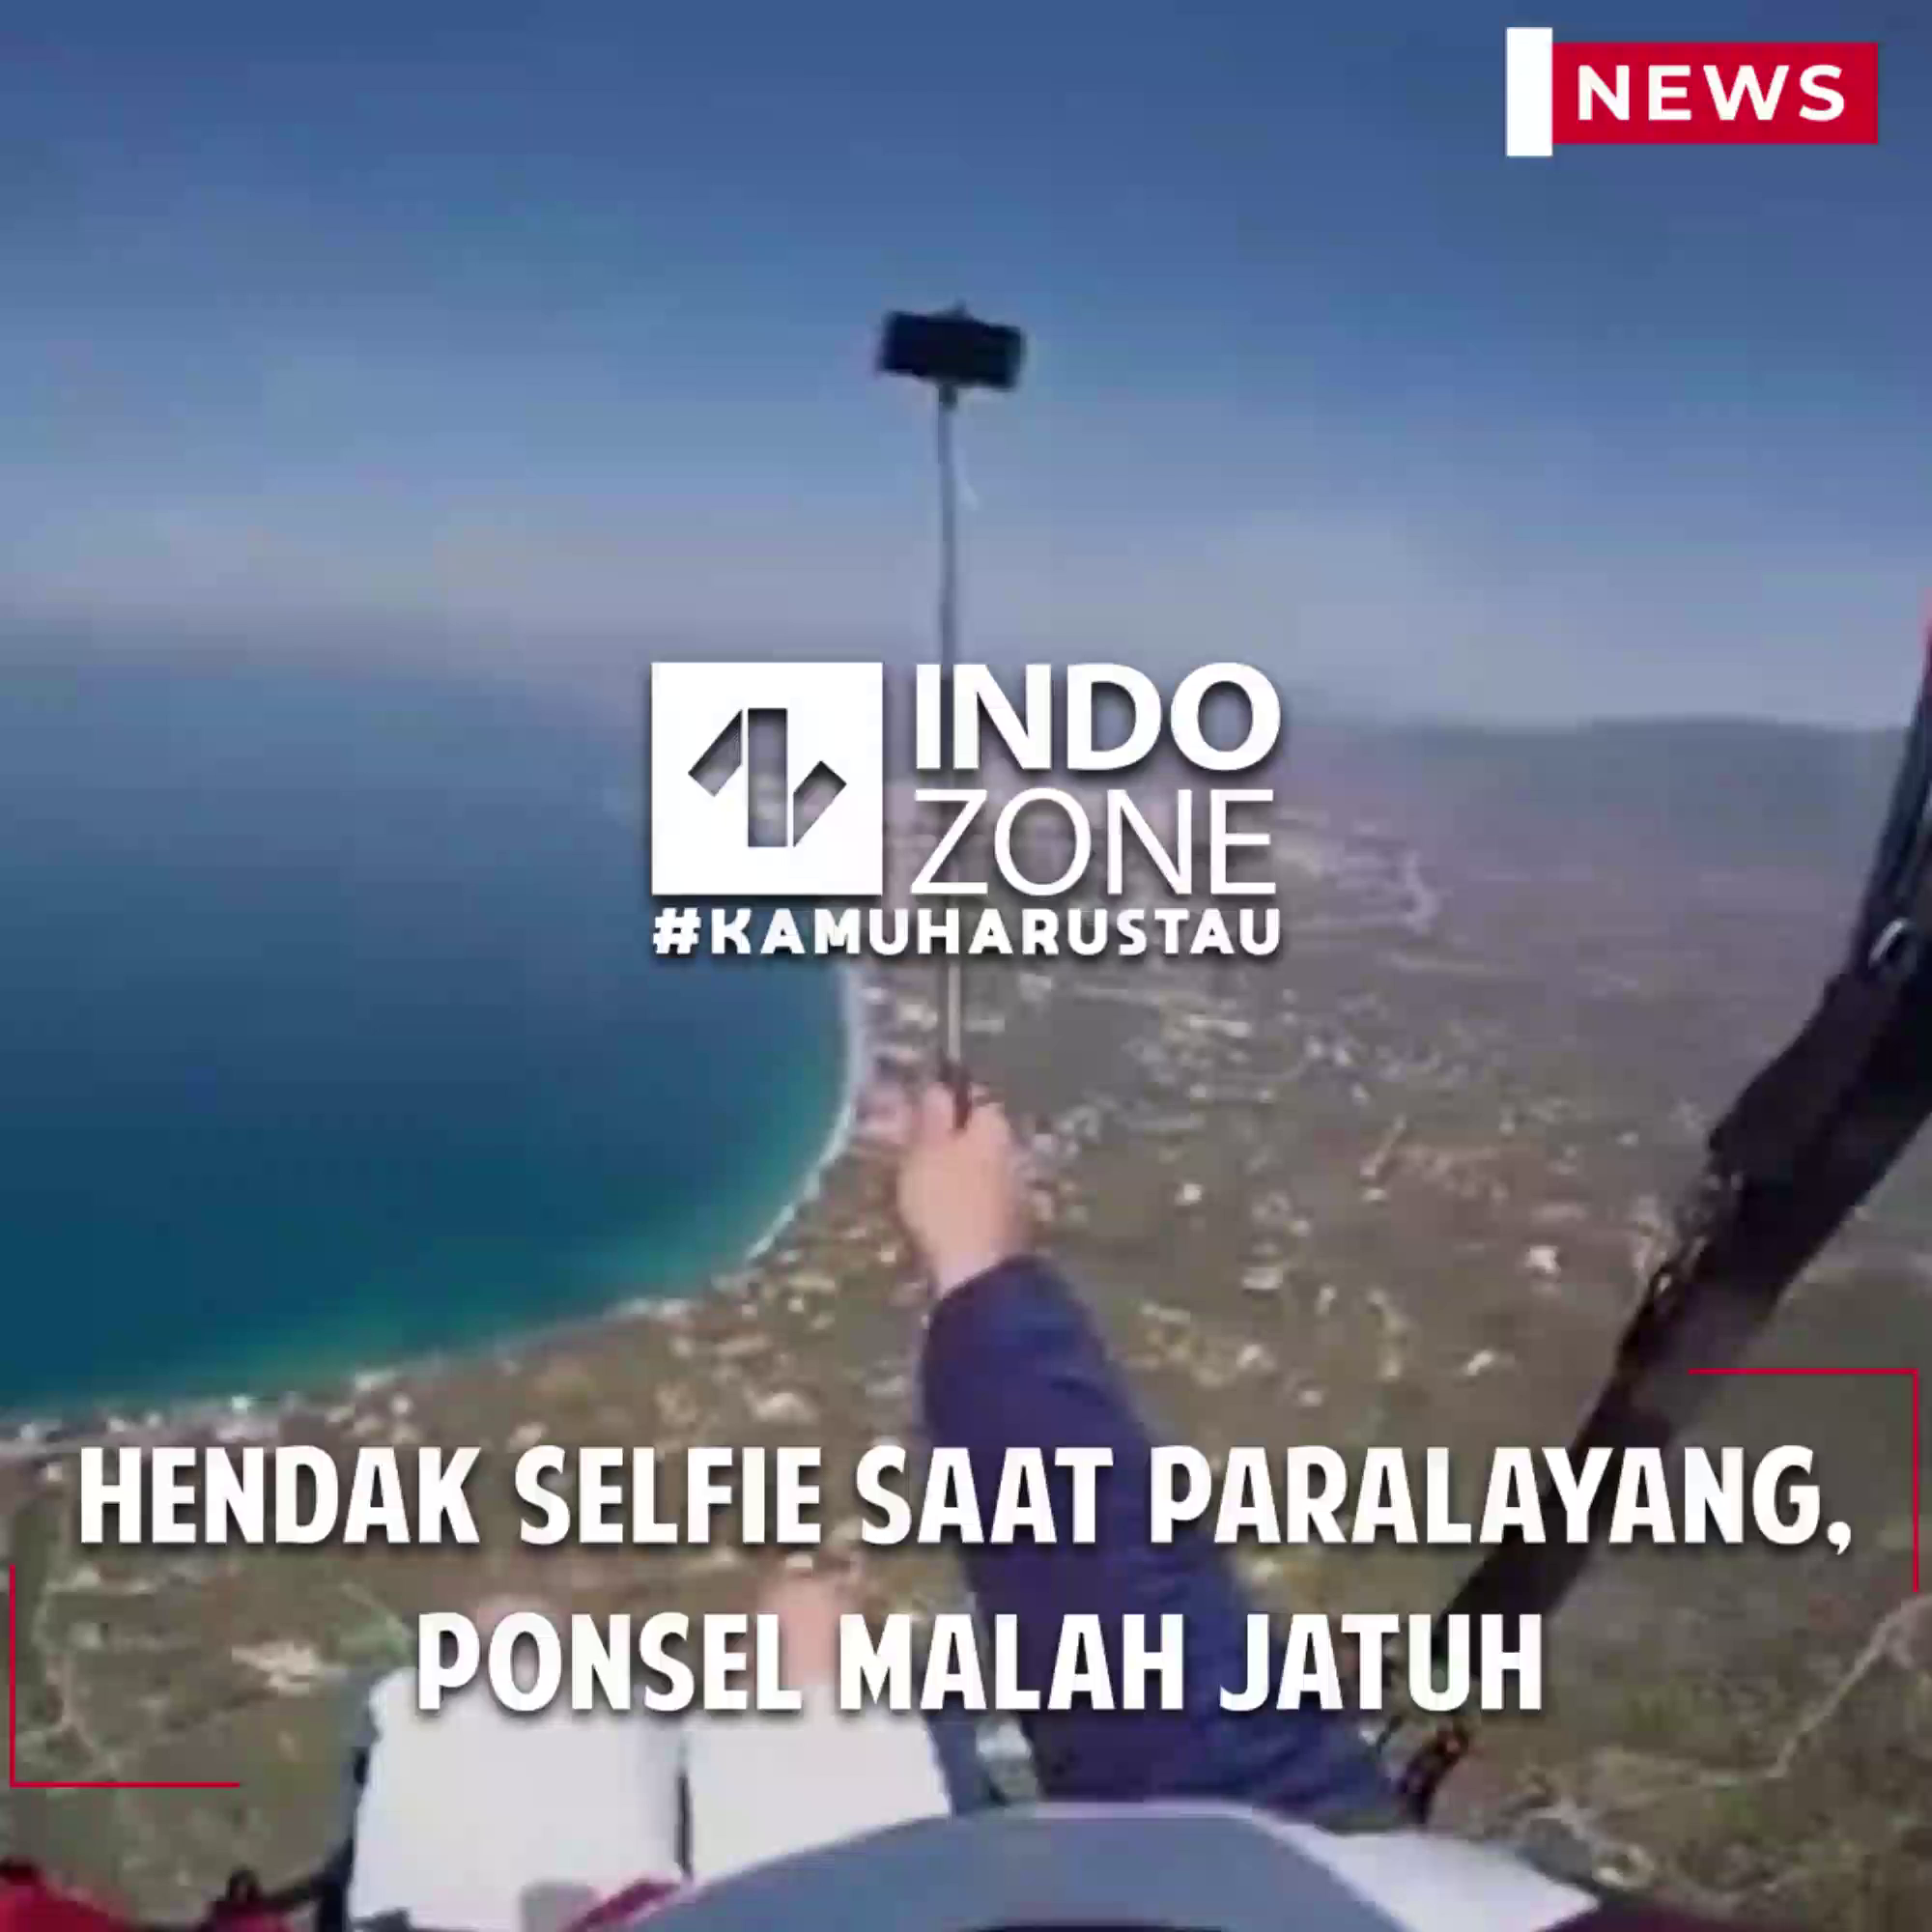 Hendak Selfie Saat Paralayang, Ponsel Malah Jatuh